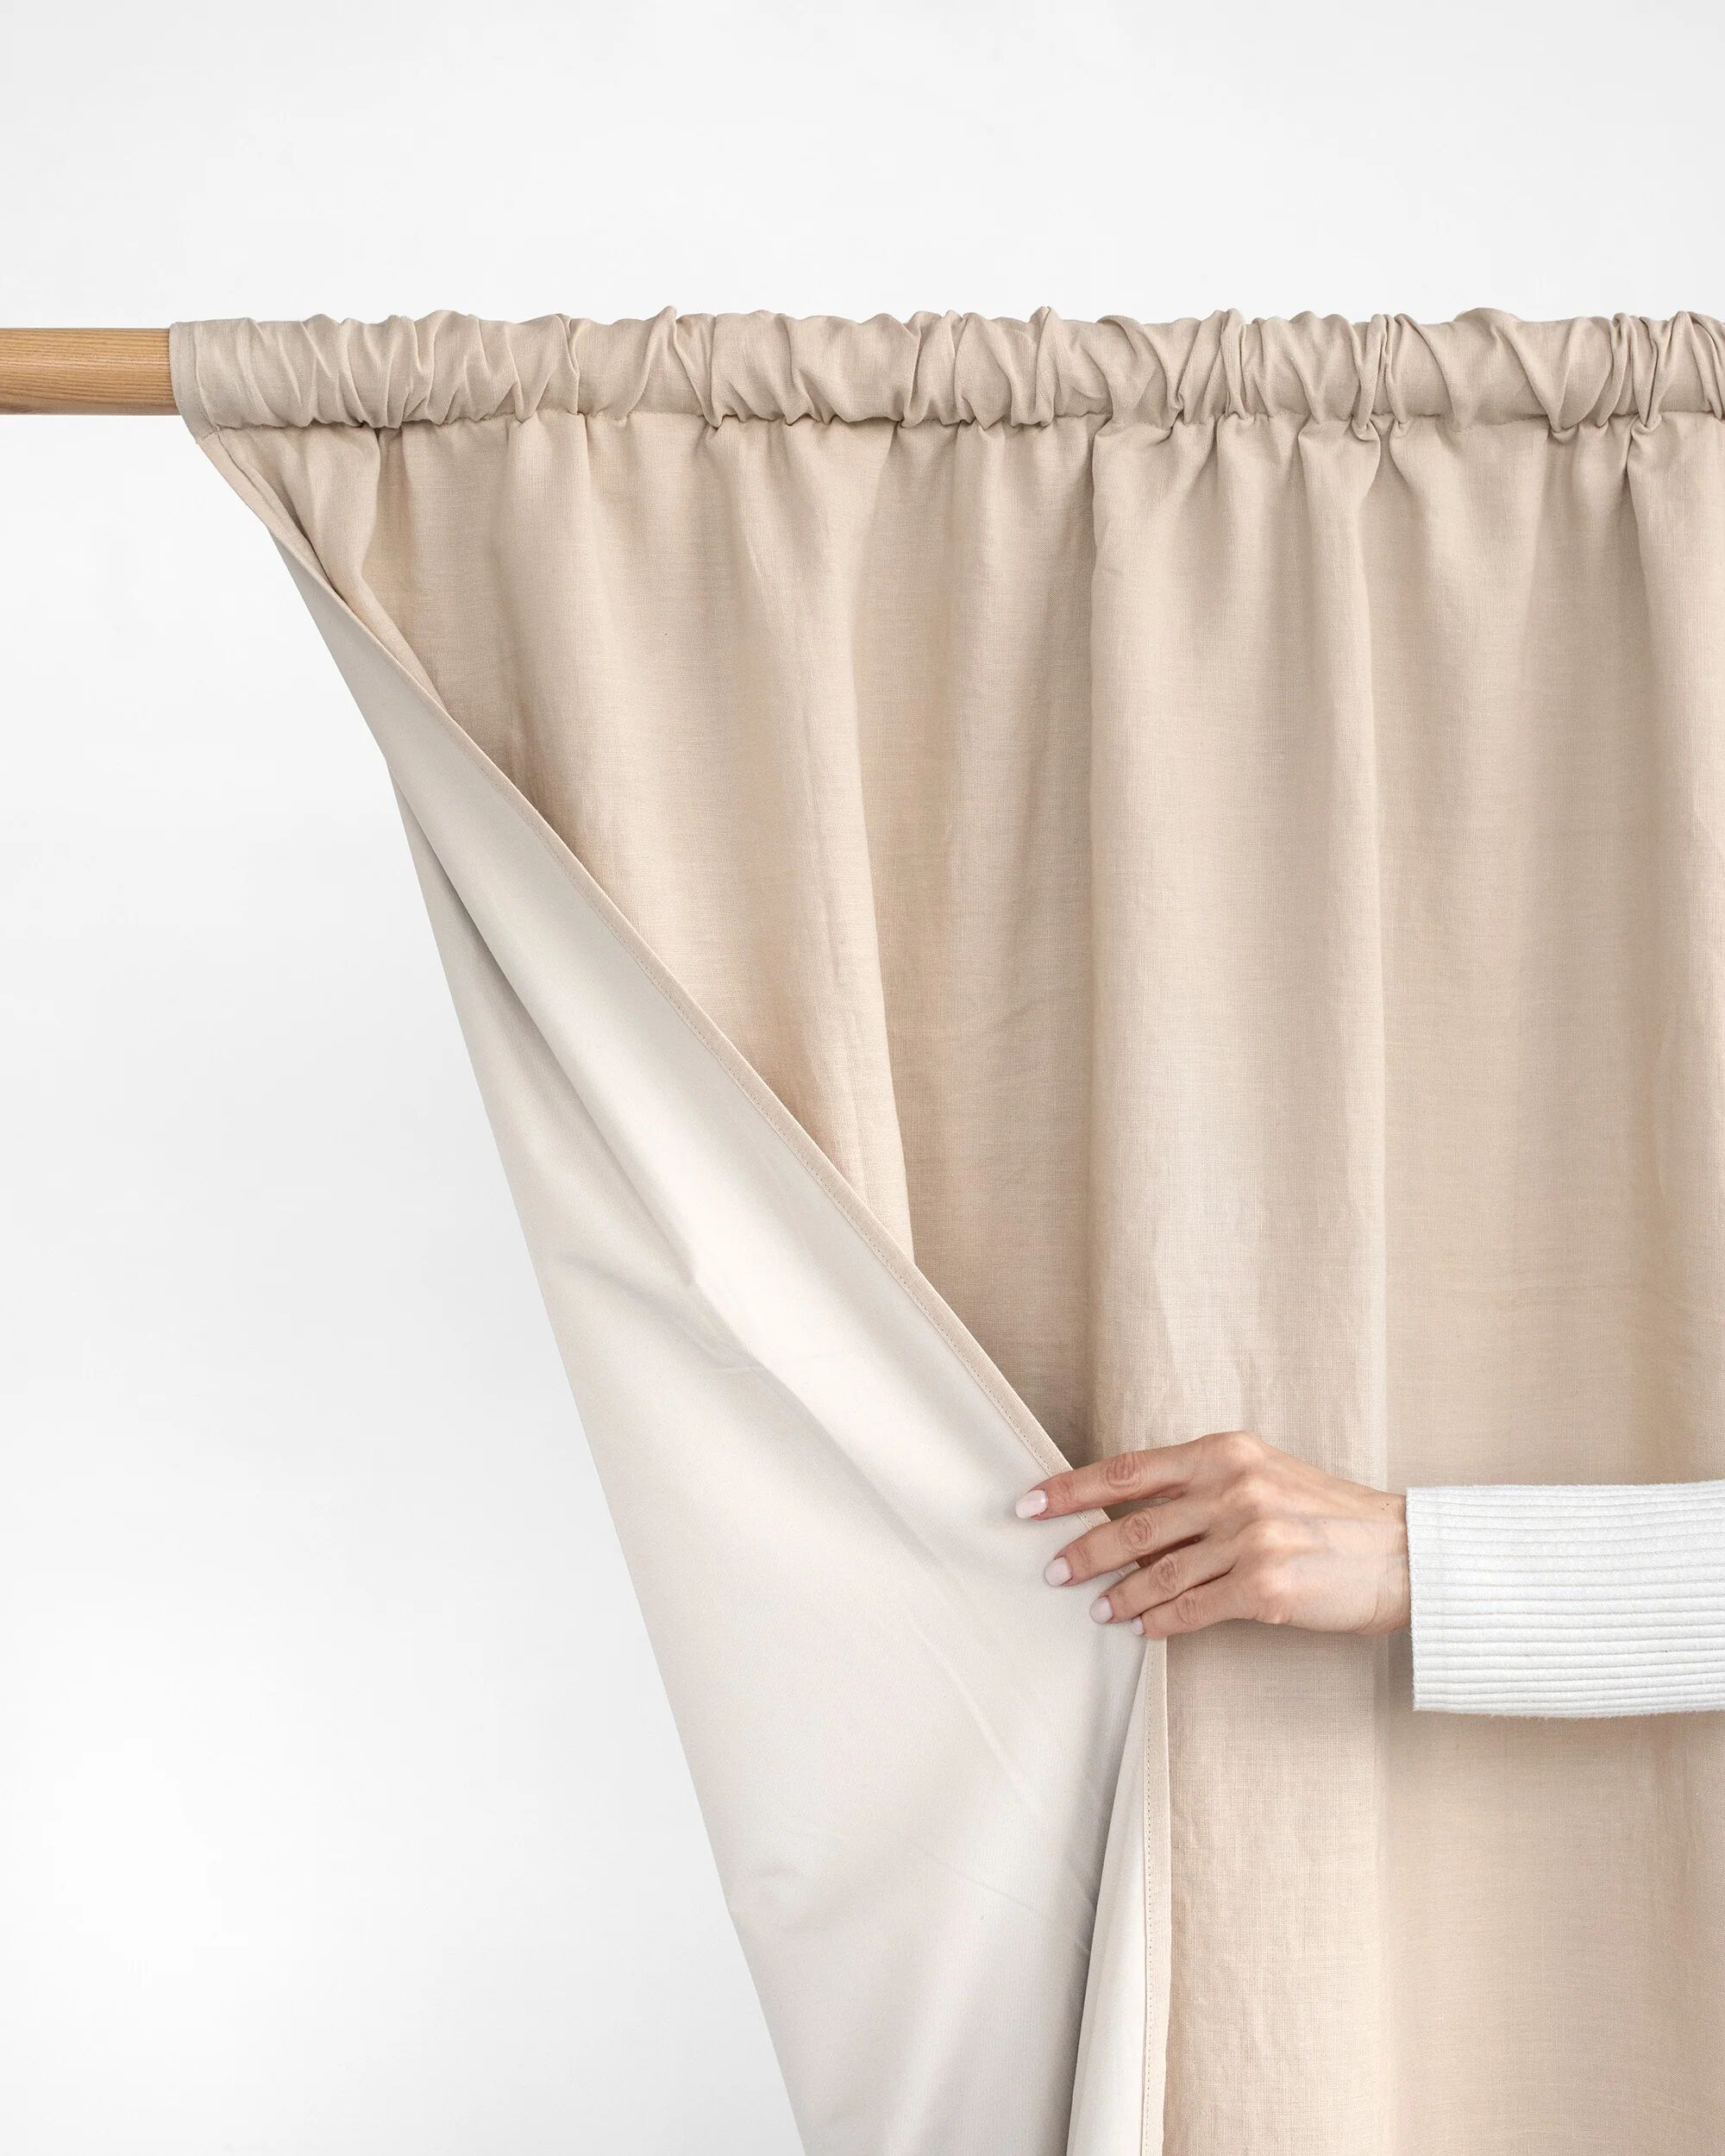 MagicLinen Blackout linen curtain panel (1 pcs) in Natural linen - 100x108" / 254x275 cm